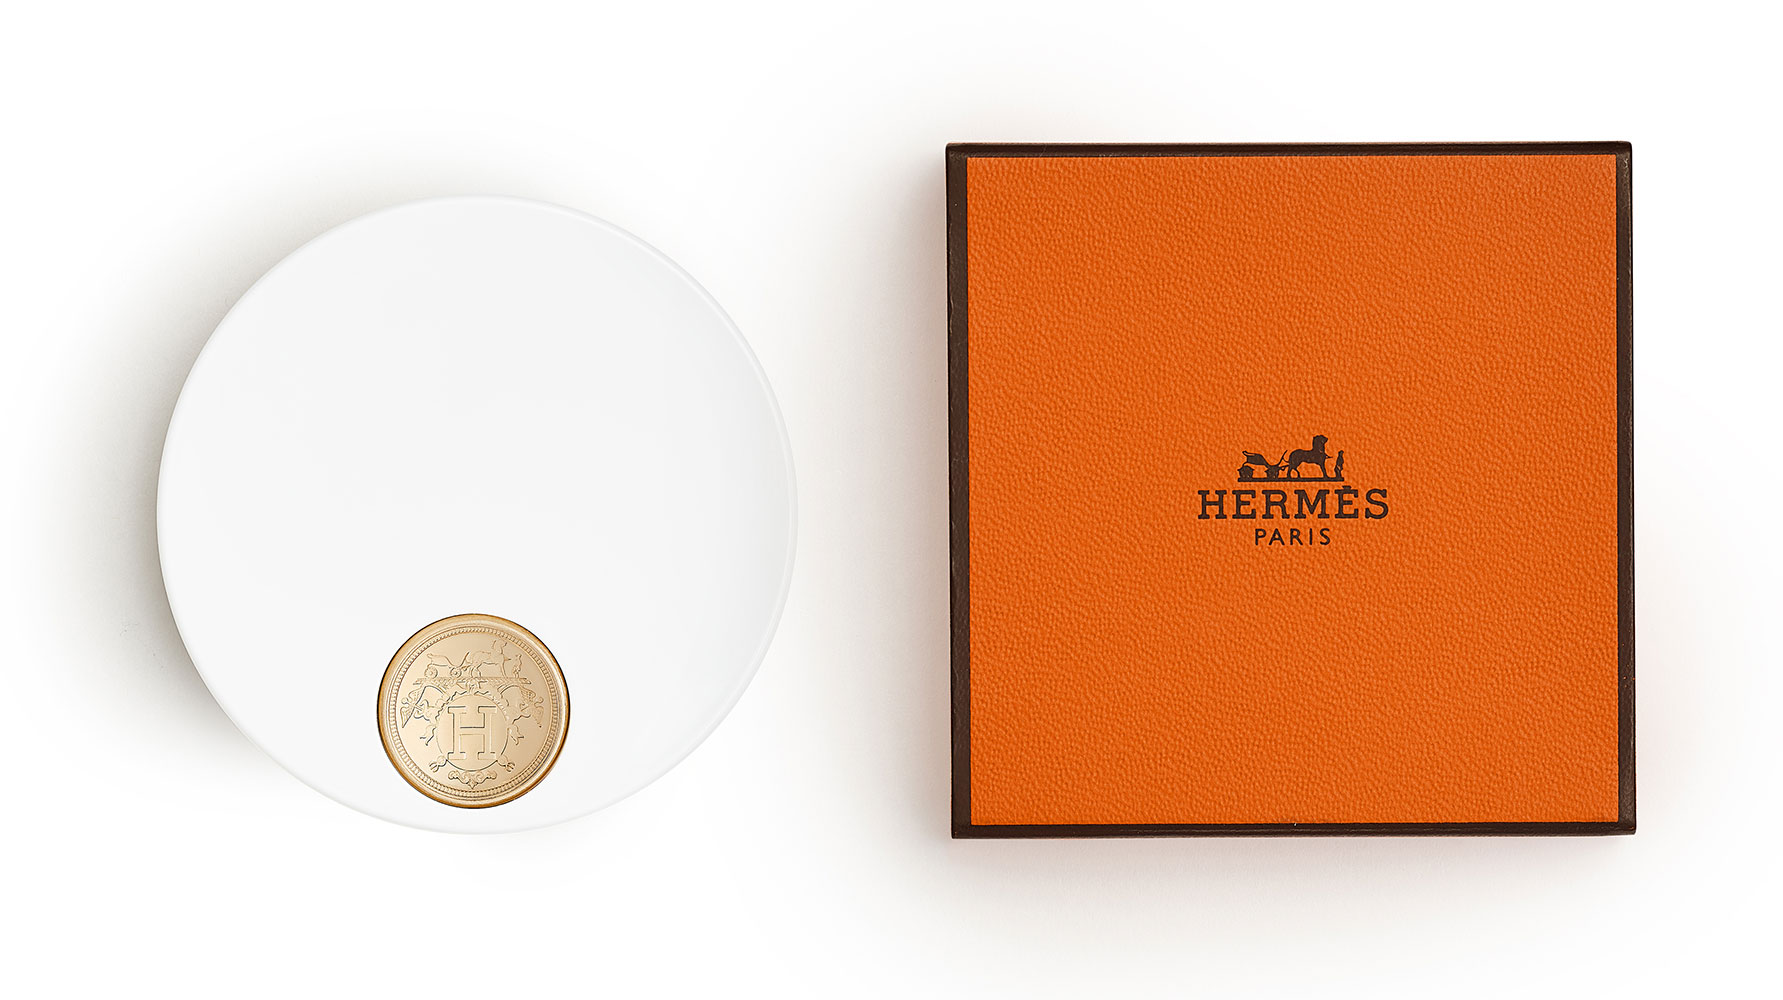 phan bat sang hermes Poudre dOrfevre - Hermès Poudre d’Orfèvre, phấn bắt sáng lấy cảm hứng từ nghệ thuật chế tác vàng